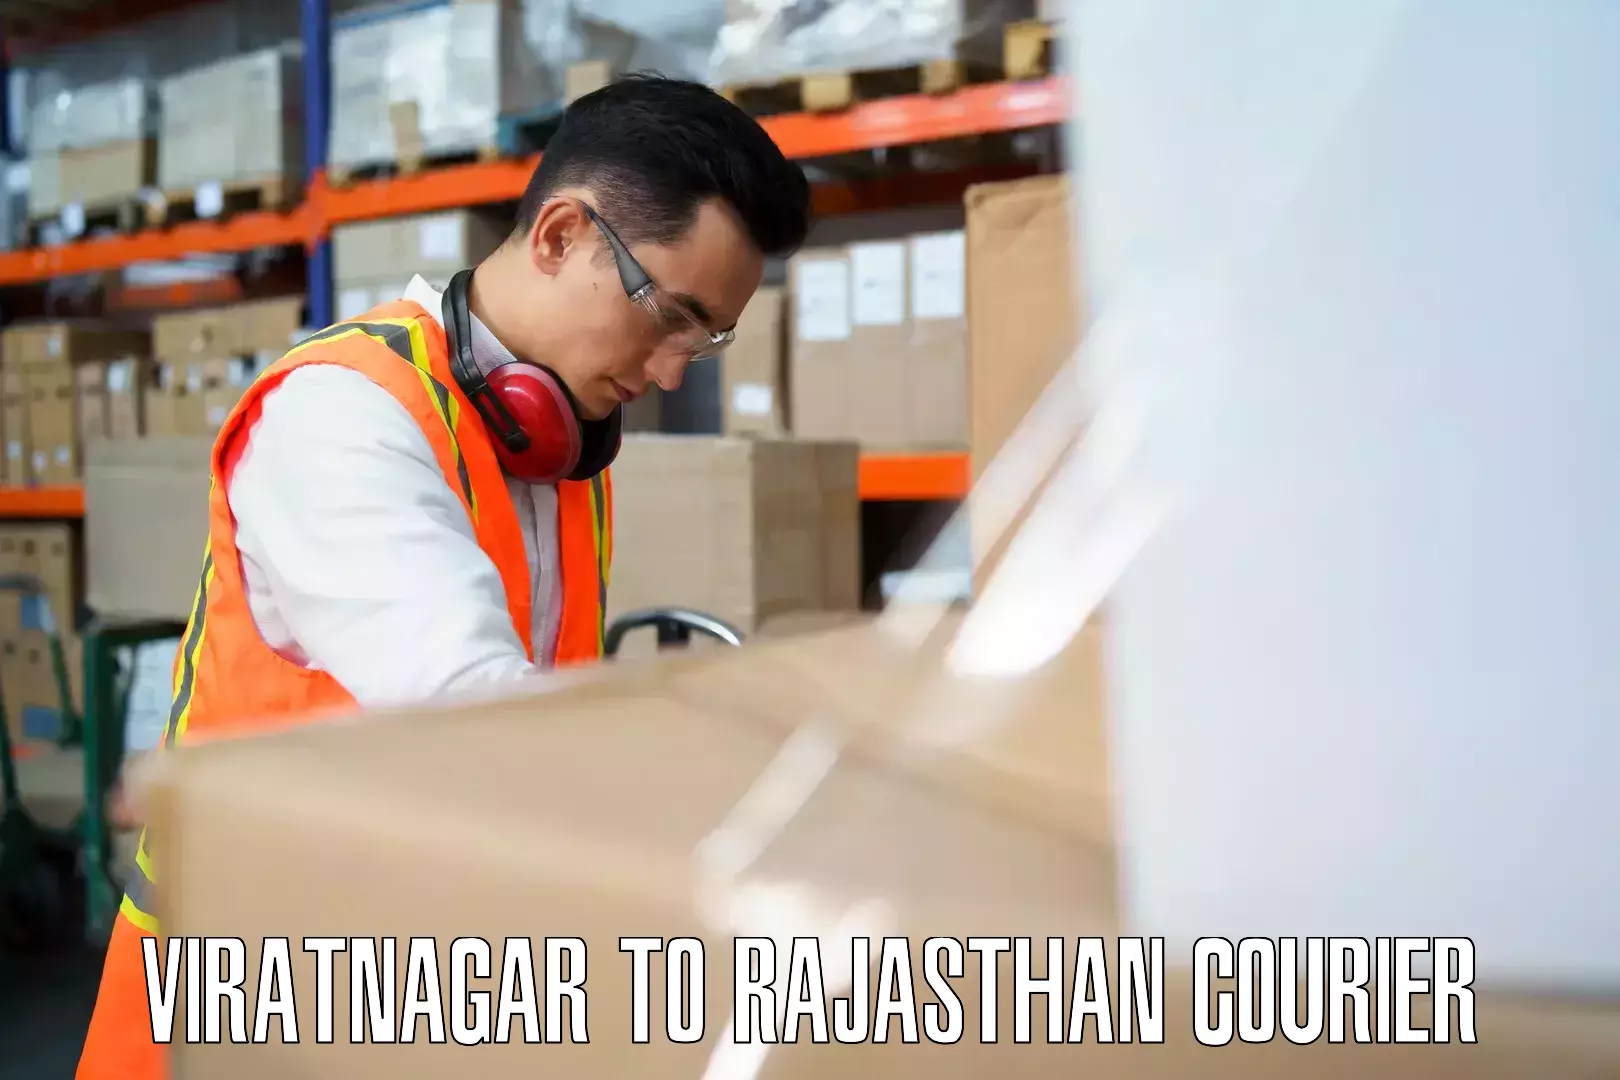 Luggage dispatch service Viratnagar to Renwal